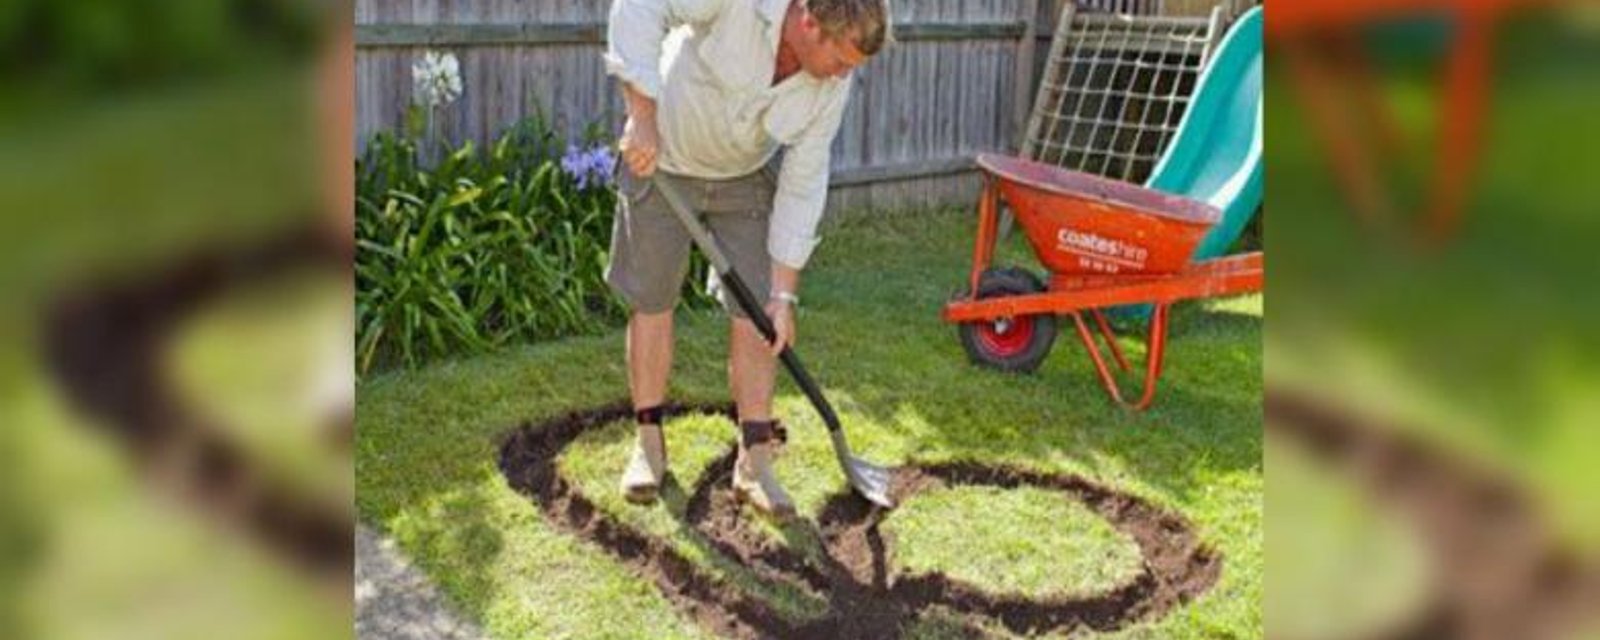 Ce papa a creusé une forme amusante dans le jardin! Ce qu'il en a fait? C'est brillant! 